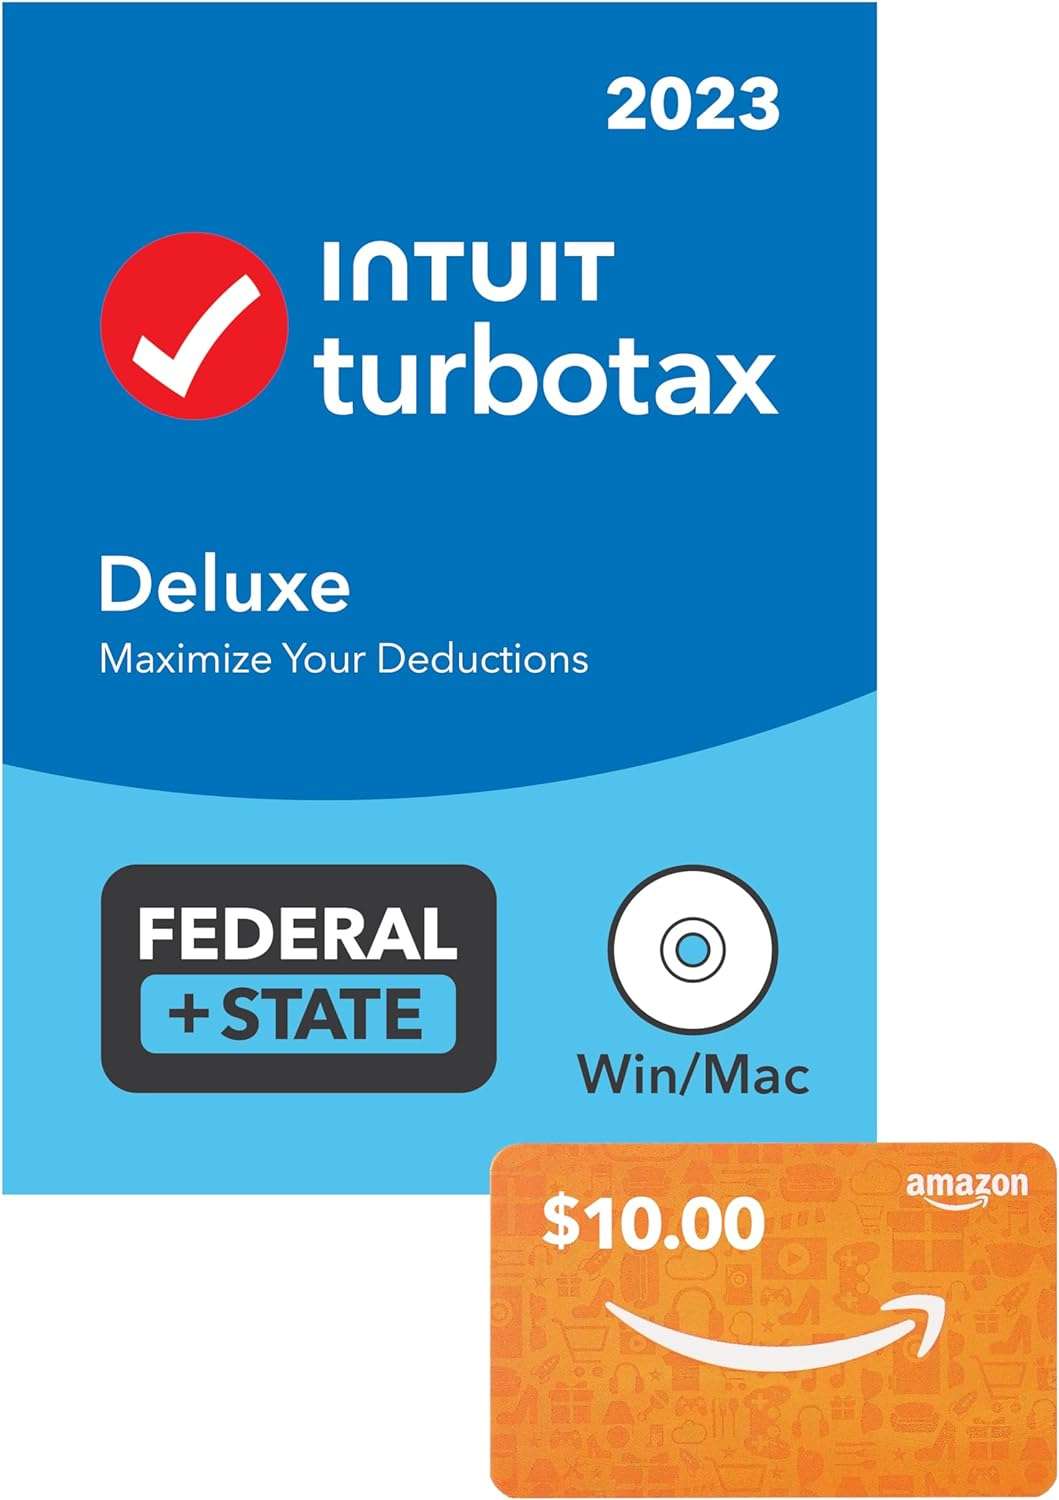 TurboTax 2023 Tax Software Sale